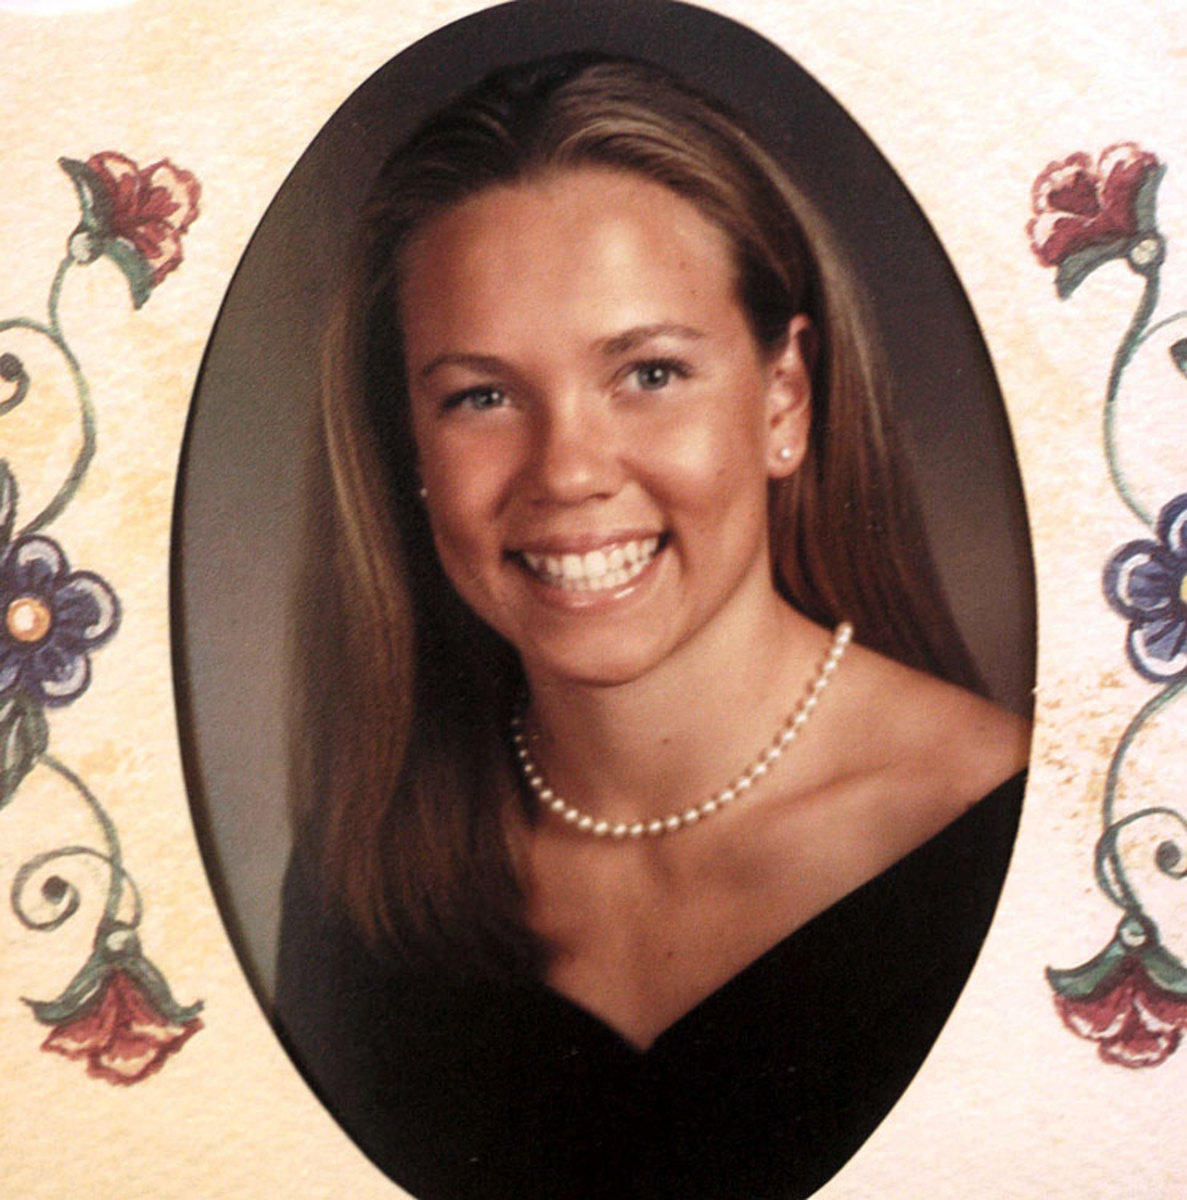 2000-Natalie-Coughlin-Caroldelet-High-School-yearbook.jpg